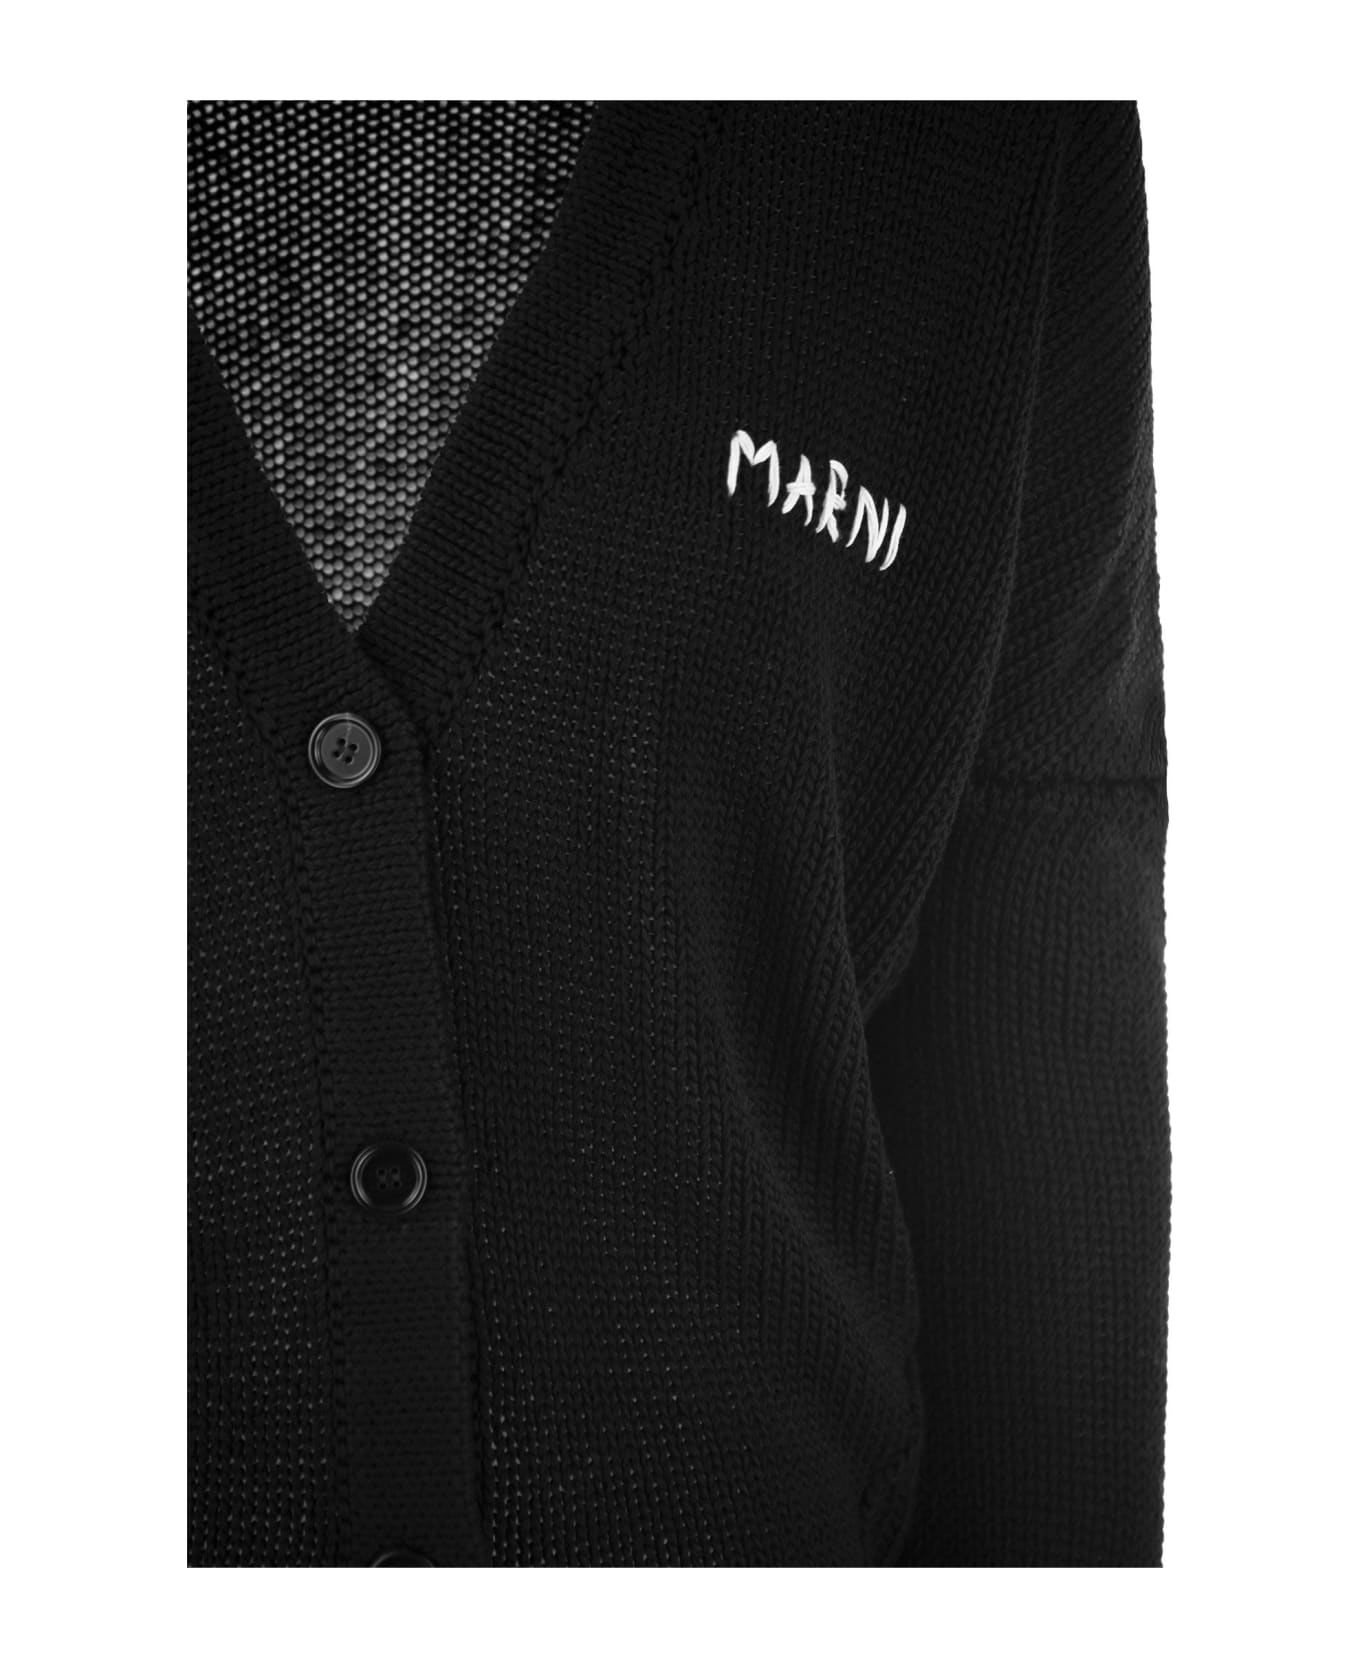 Marni Cotton Cardigan - Black